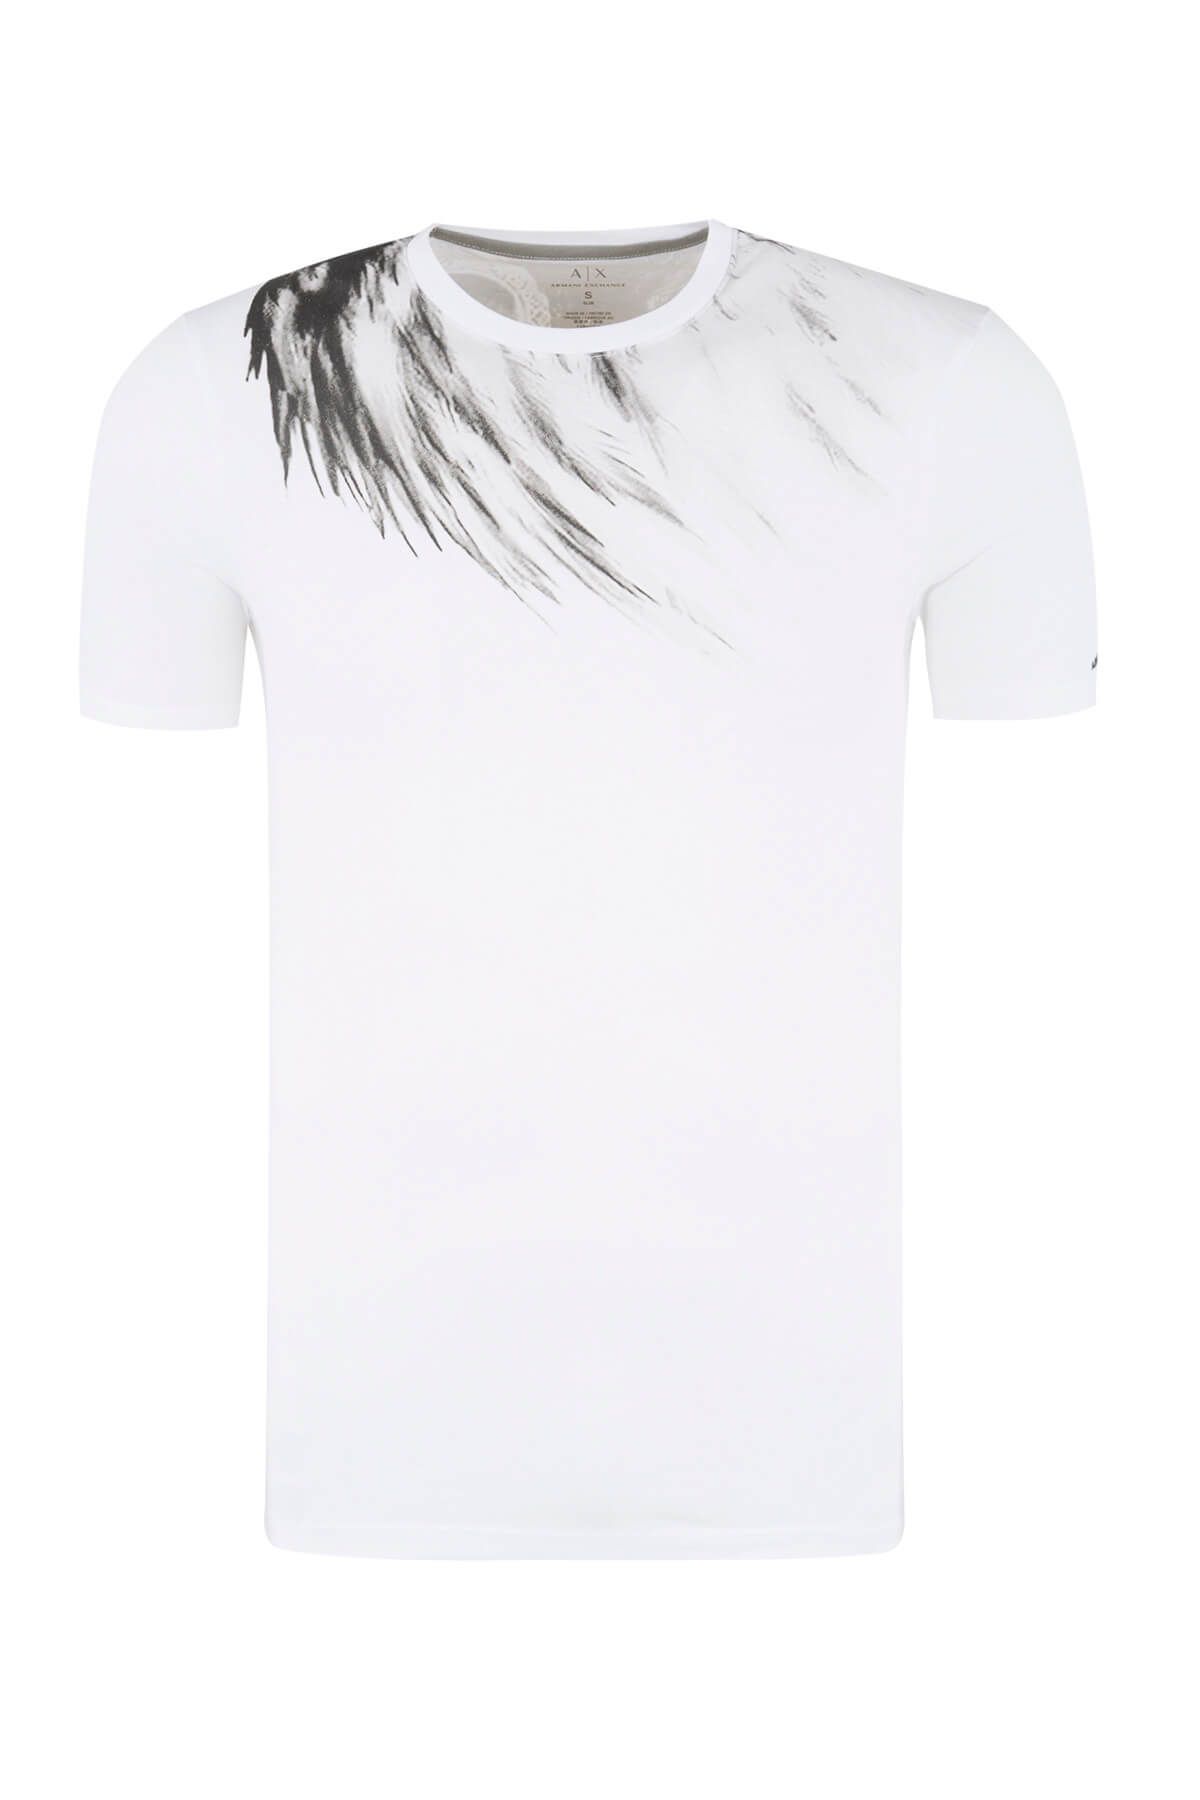 Armani Exchange Erkek T-Shirt